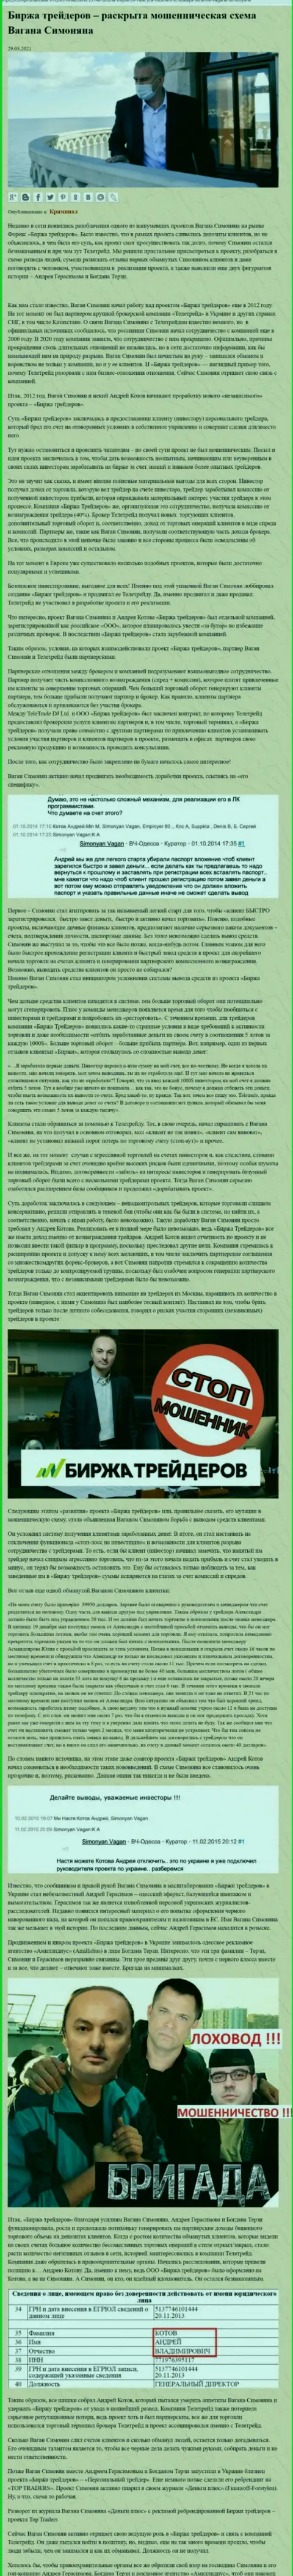 Рекламой организации B Traders, связанной с ворюгами Теле Трейд, тоже был занят Богдан Терзи